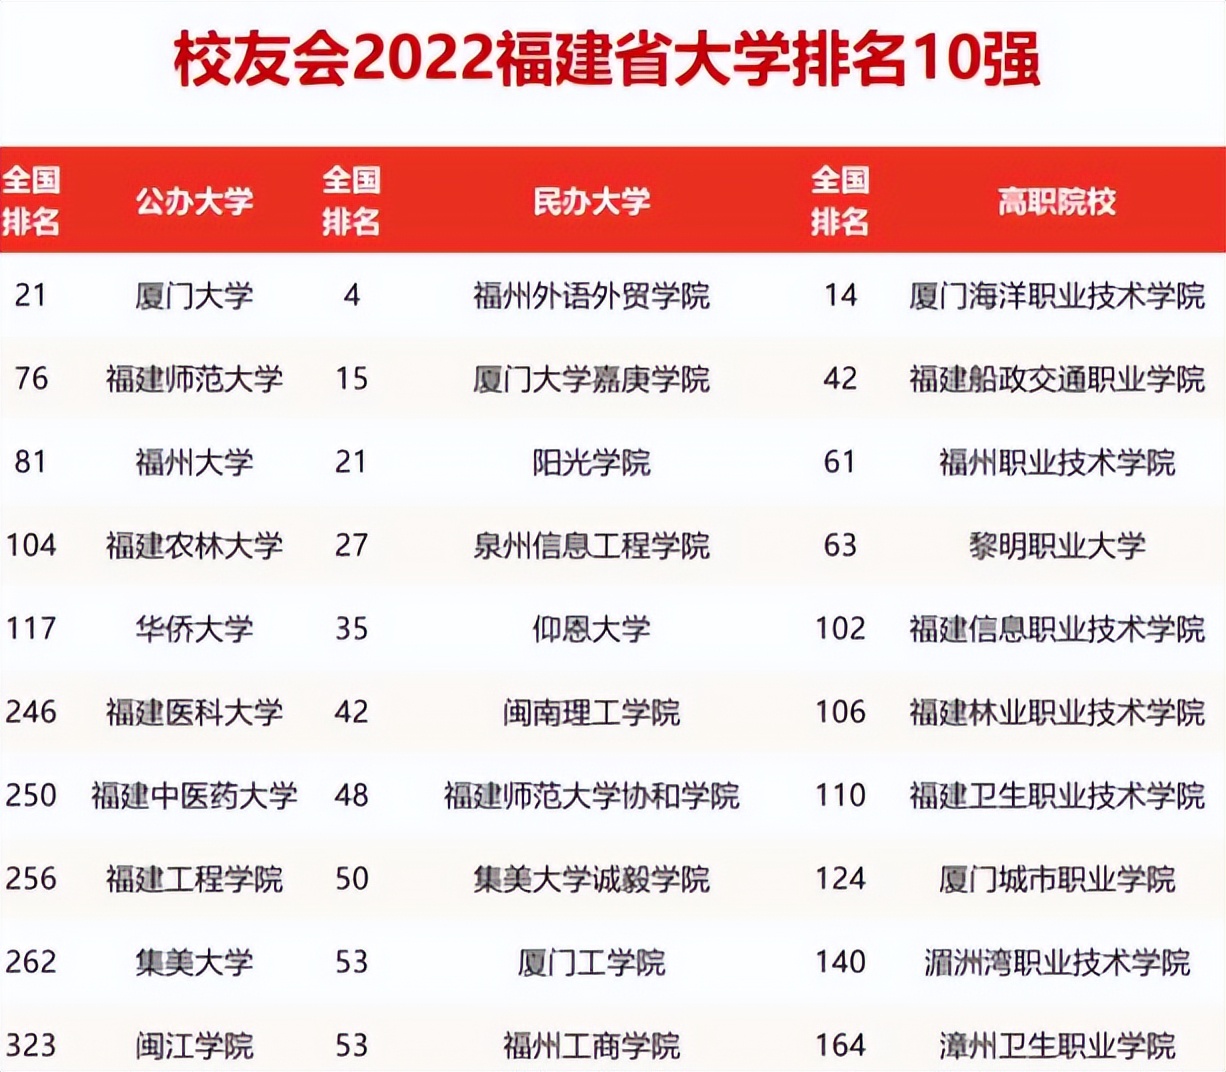 福建3所双一流大学名单(2022福建高校排名最新更)